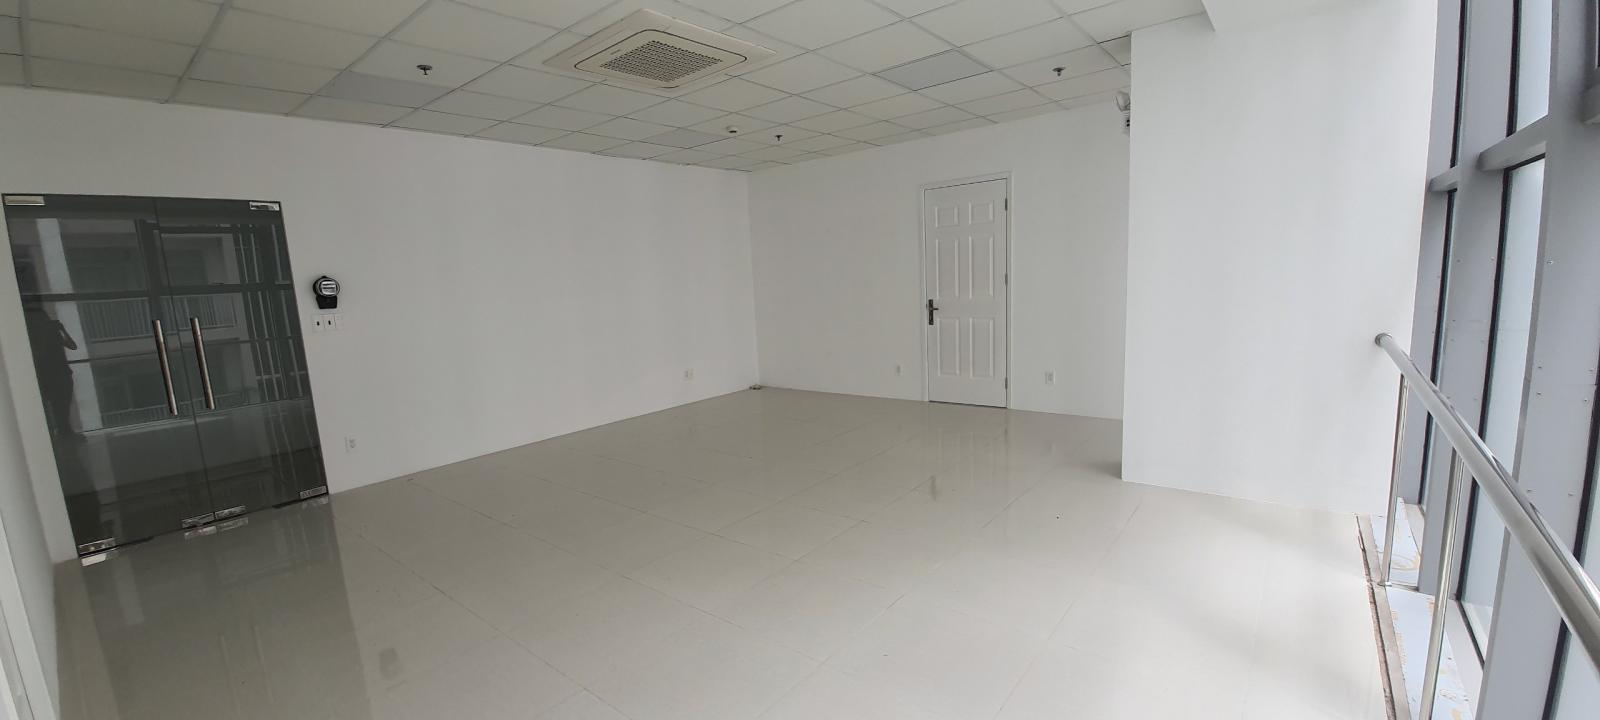 Văn phòng cho thuê giá tốt Luxcity - 528 Huỳnh Tấn Phát, Quận 7. LH 0868.920.928